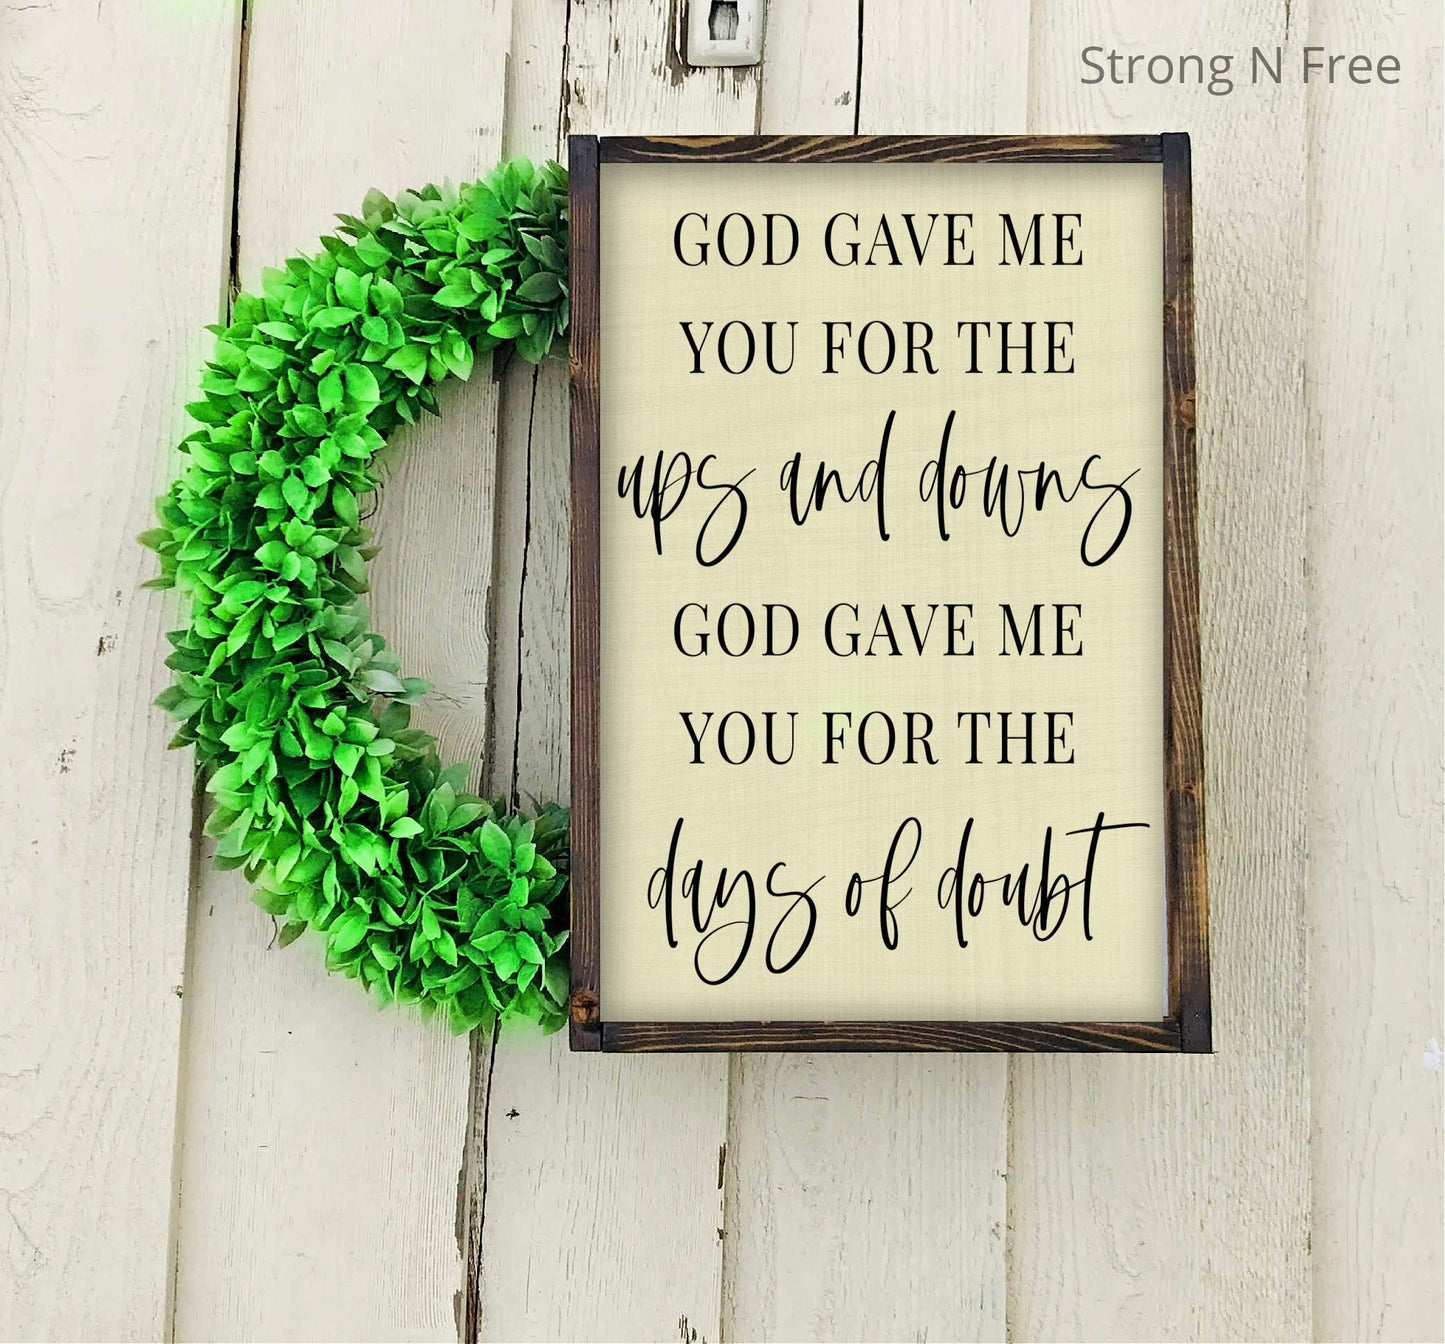 Wooden Sign Framed - "God Gave Me You For The Ups and Downs" - Blake Shelton "God Gave Me You" song lyrics